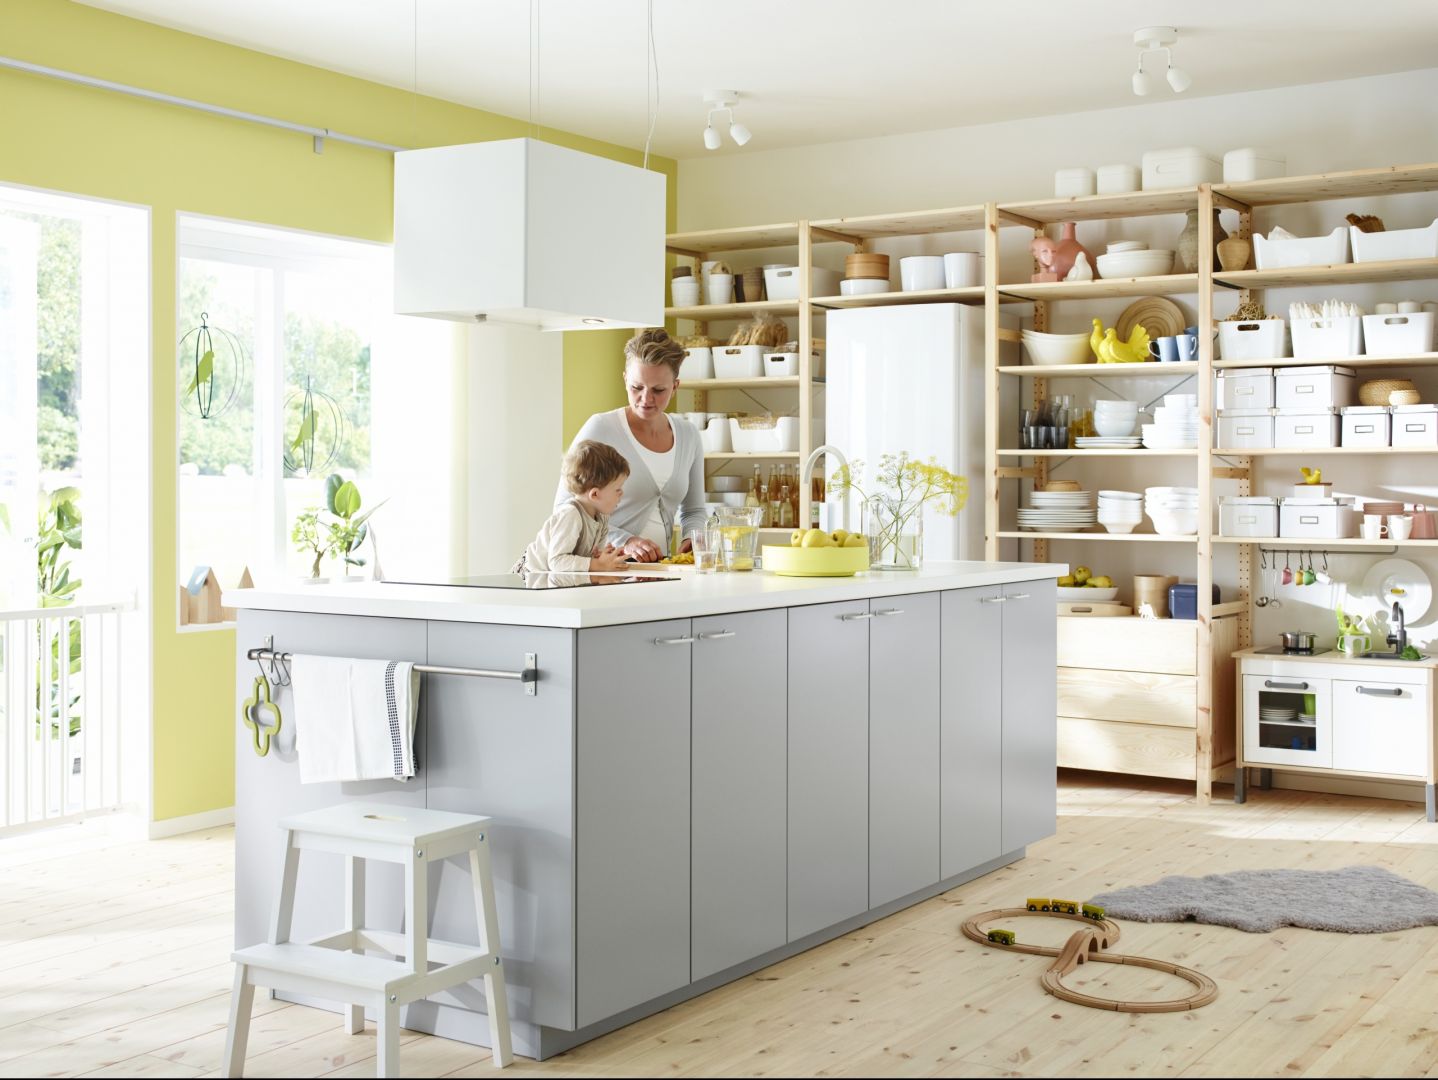 Szarości są obecnie bardzo modne. Aby przestrzeń kuchni była jasna i słoneczna, warto wybrać srebrzysty odcień szarości. Na zdjęciu kuchnia Metod. Fot. IKEA